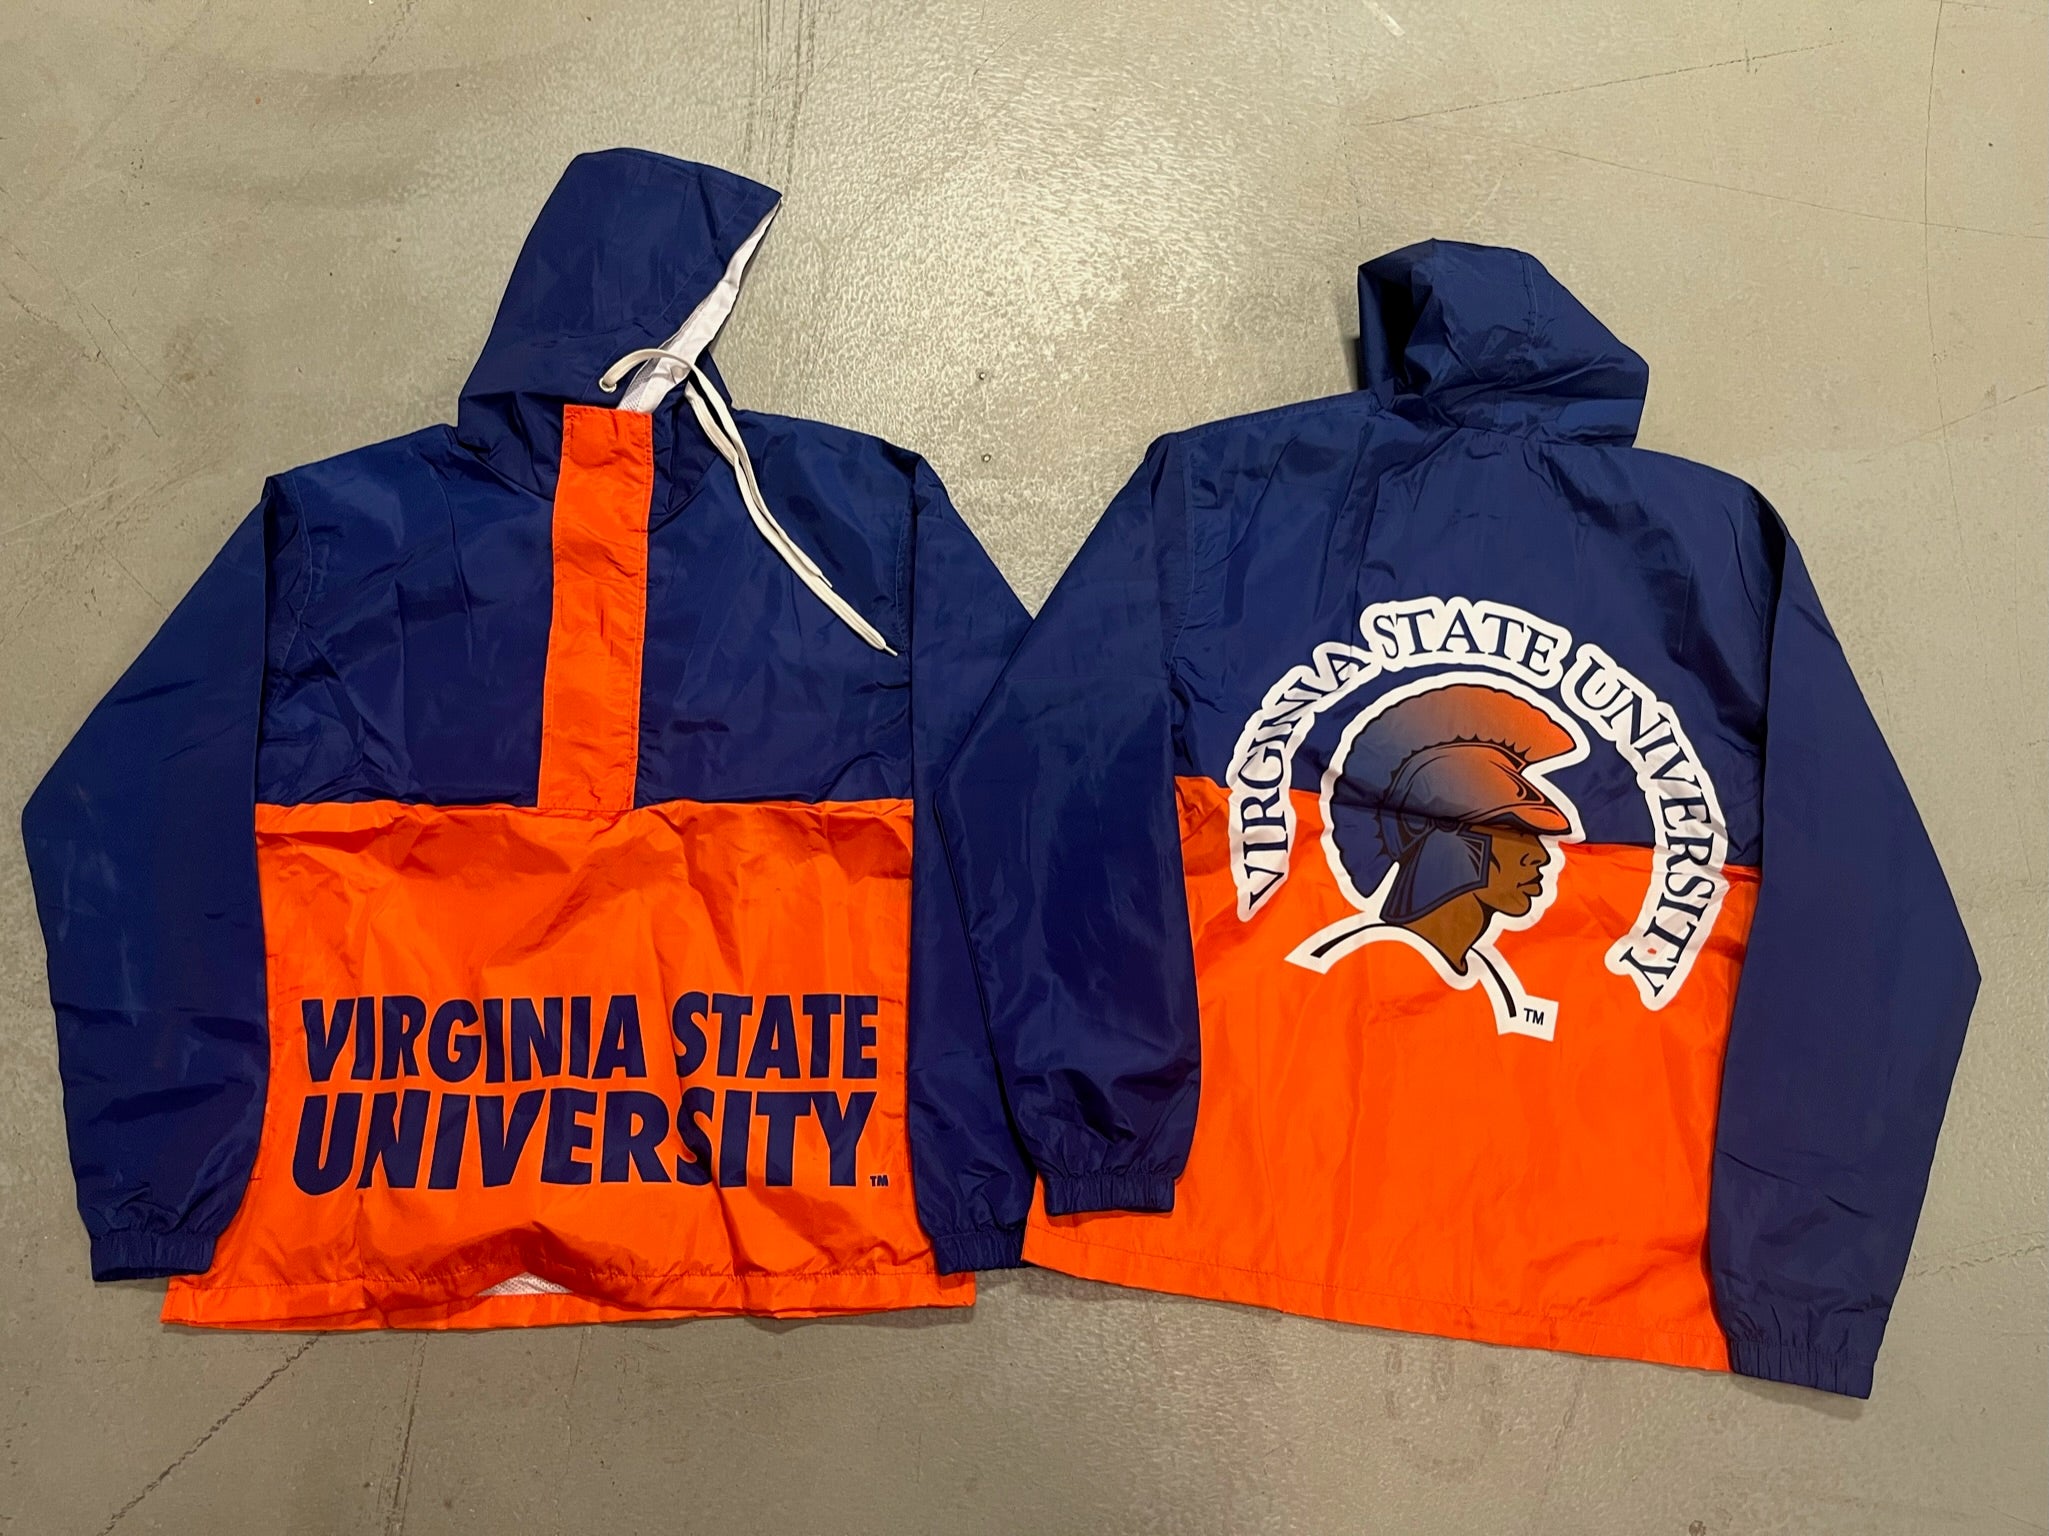 Virginia State University Pack n Go Jacket: Virginia State University